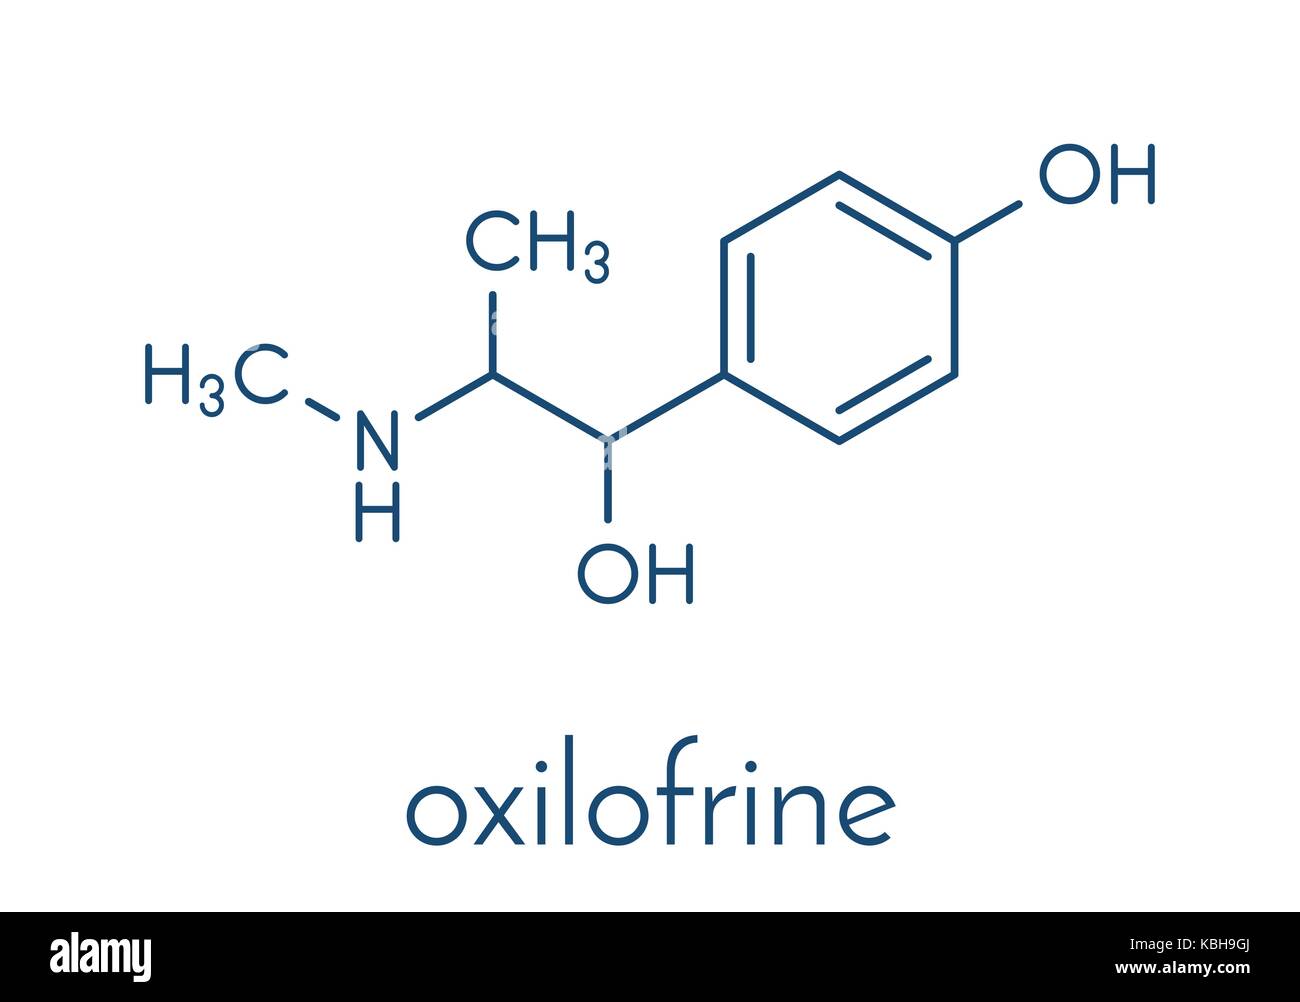 (Oxilofrine methylsynephrine, oxyephrine) Stimulans, chemische Struktur. Skelettmuskulatur Formel. Stock Vektor